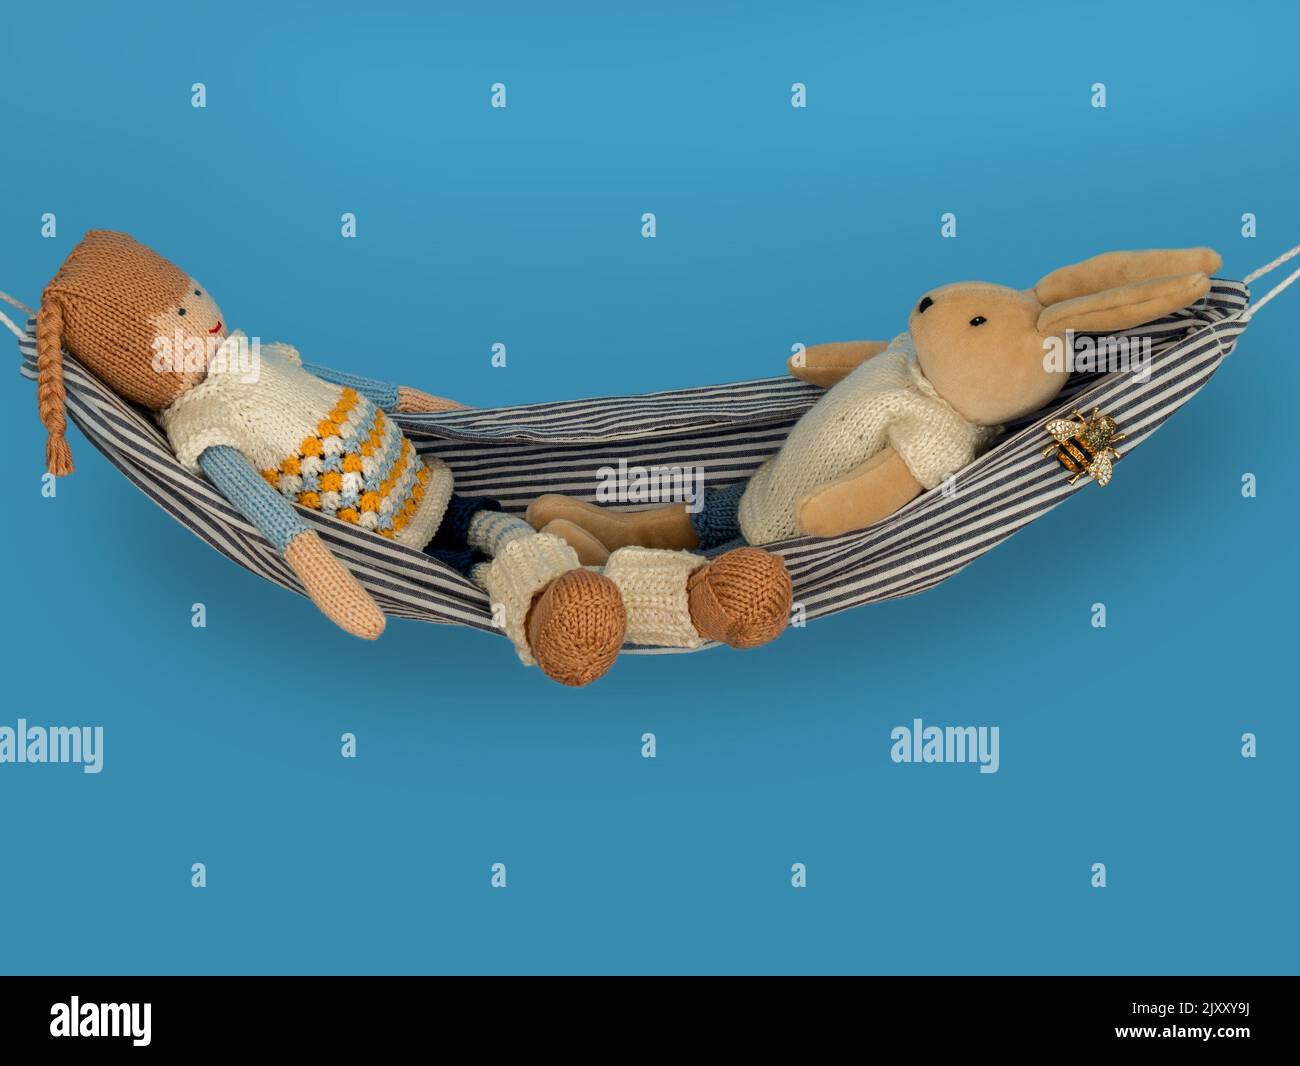 Concetto di rilassamento immagine che mostra due giocattoli morbidi per bambini (un coniglio e una bambola) rilassarsi in un'amaca di fronte a uno sfondo blu. Foto Stock